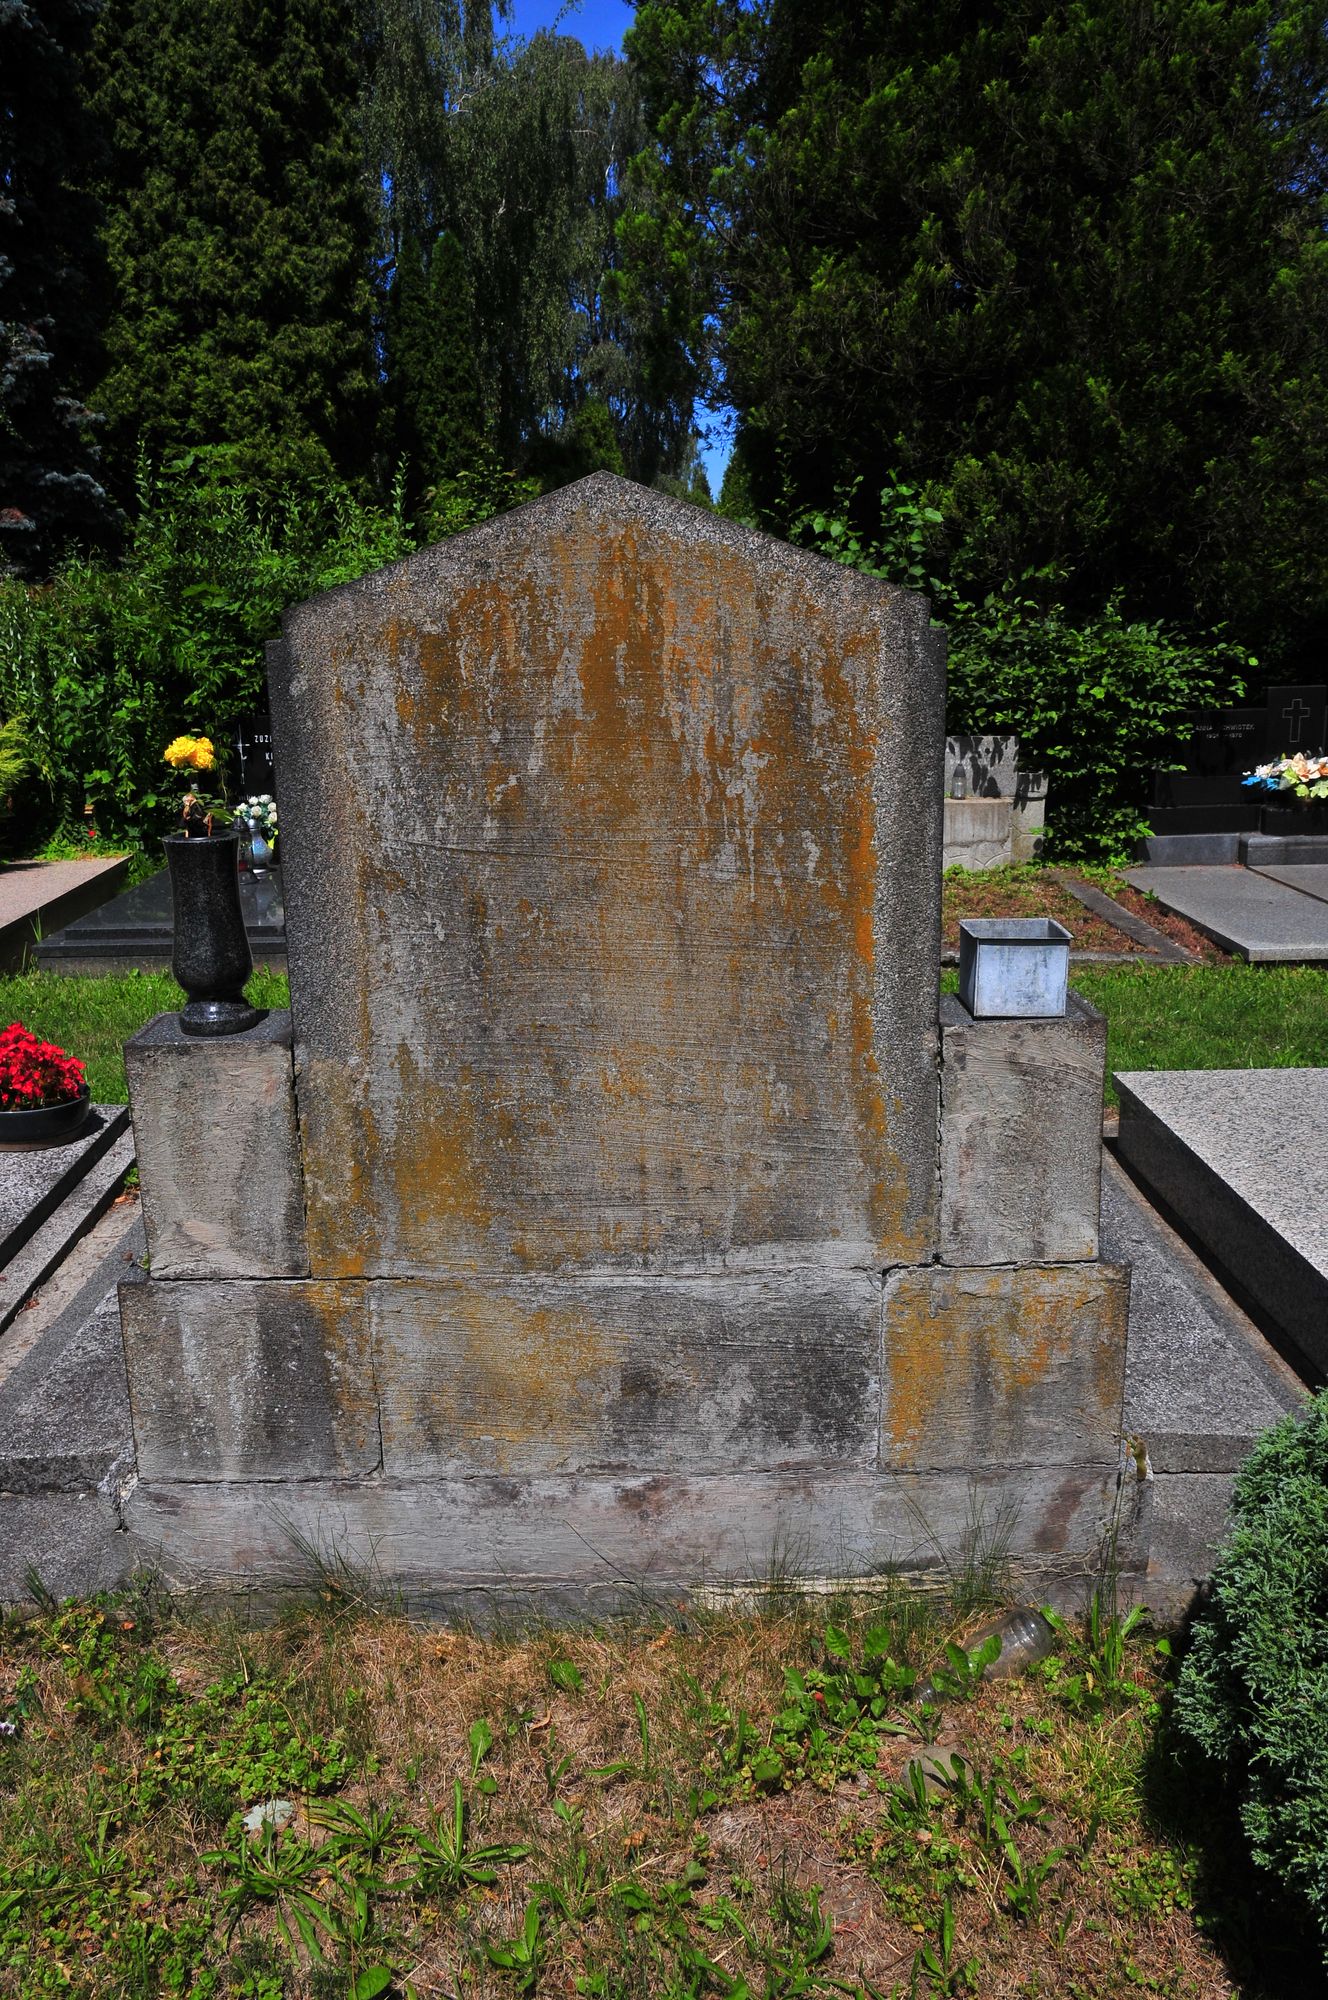 Tombstone of the Łukosz, Chlebek, Rykała families